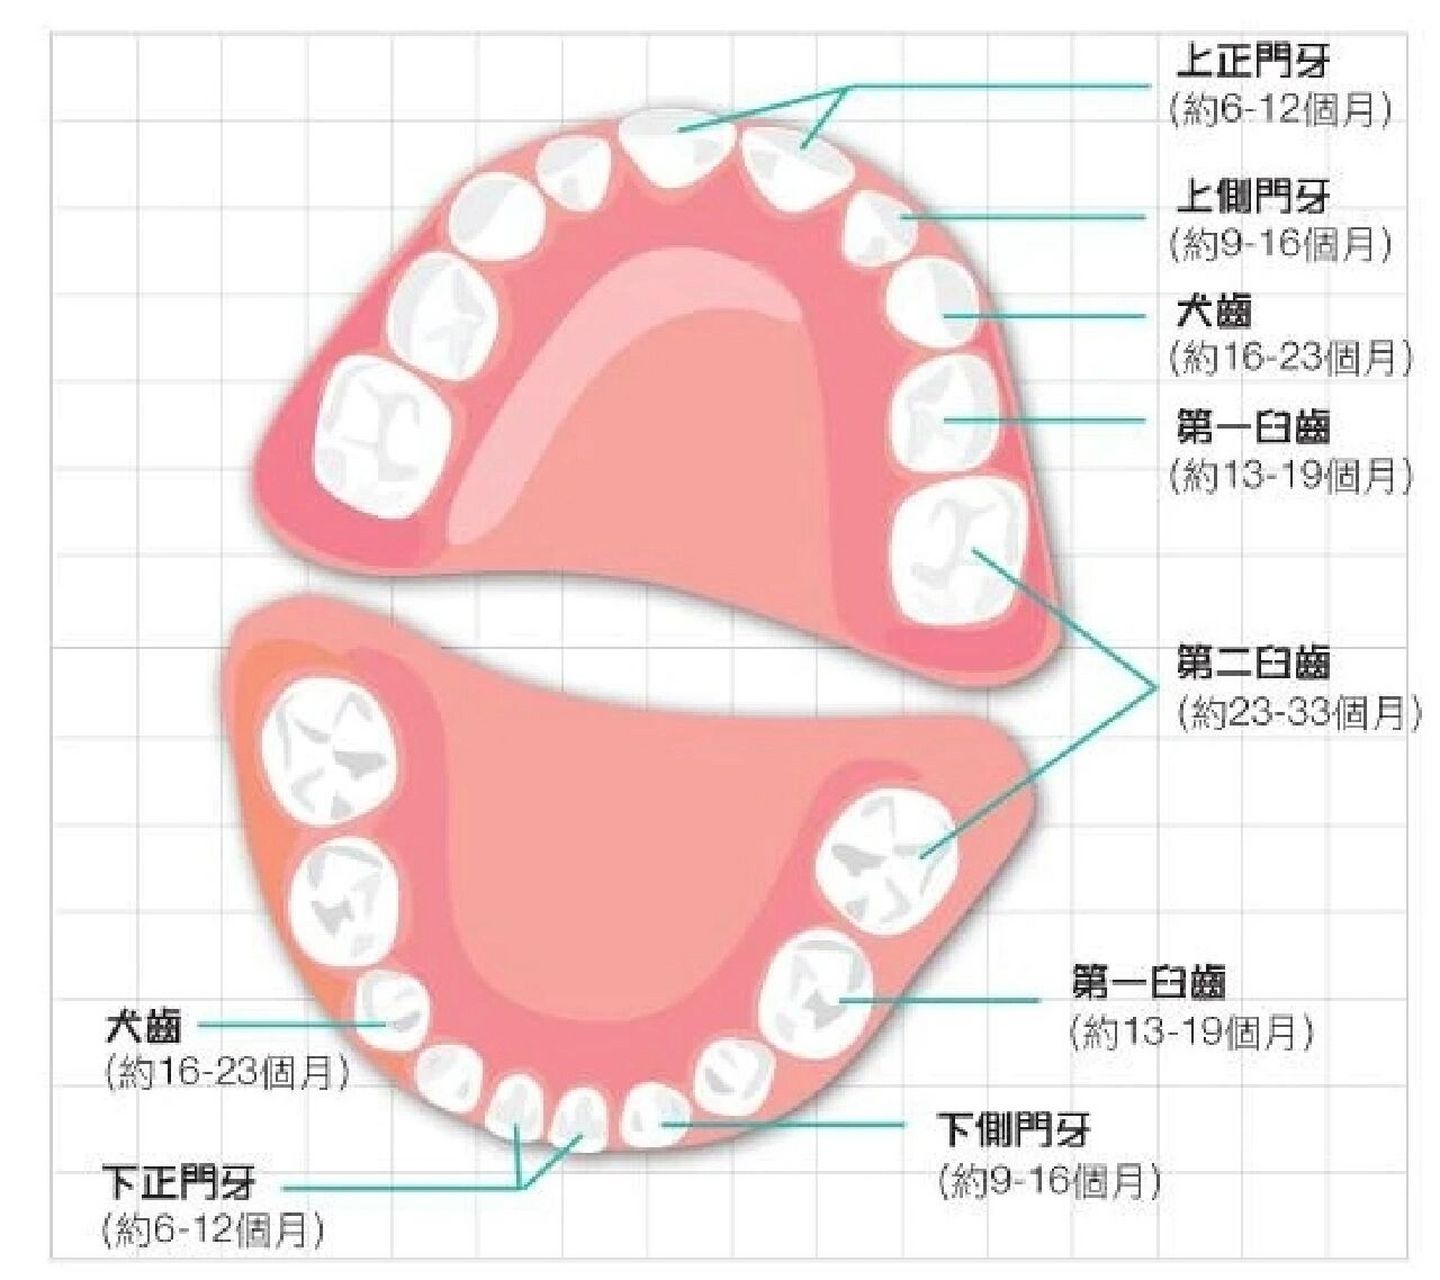 正常的人牙齿分布图片图片